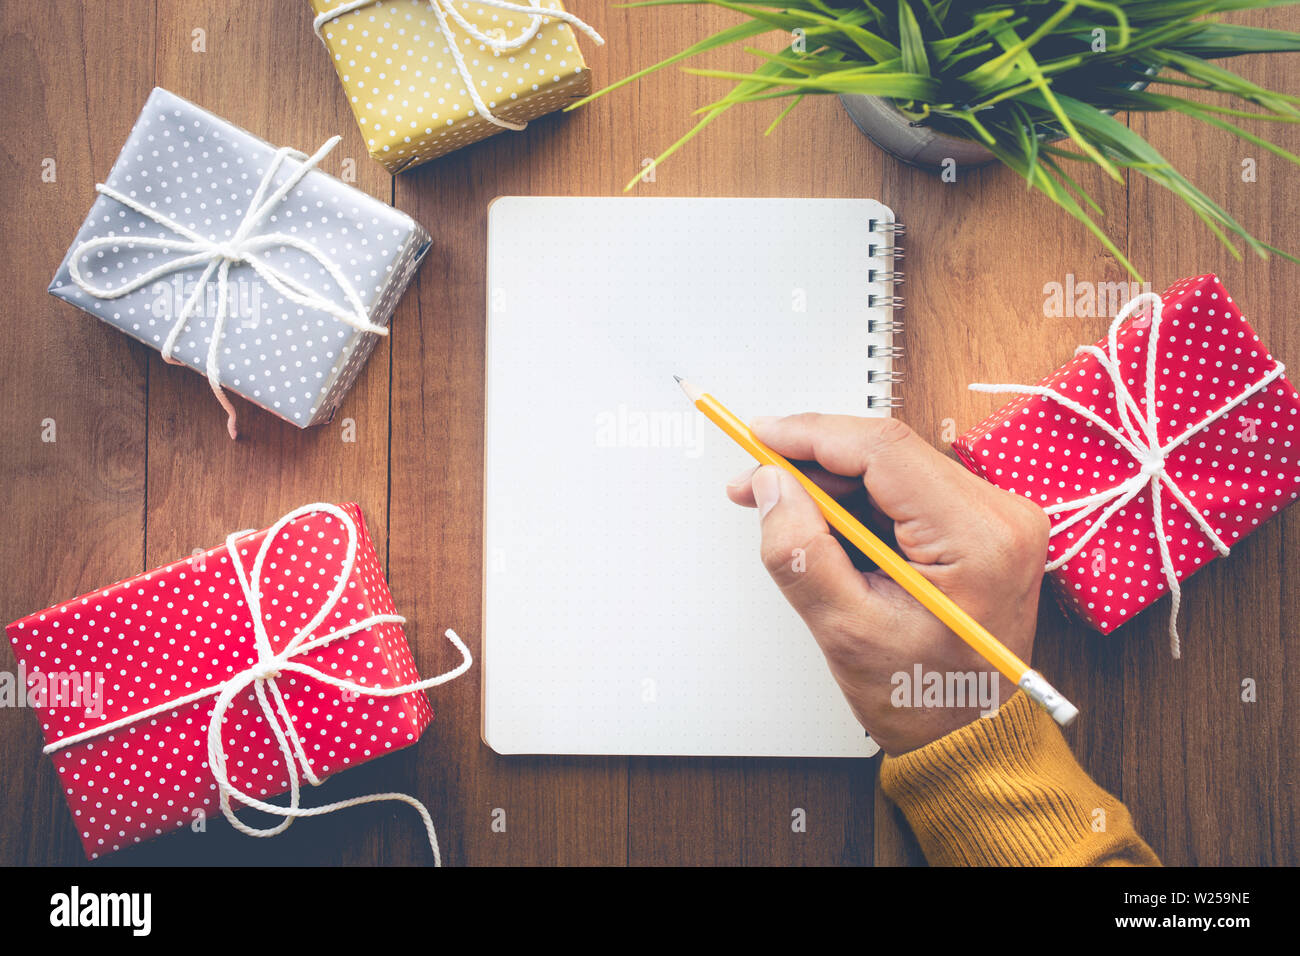 Hombre mano escribiendo una nota de papel con lindos regalos en caja de regalo de fondo la tabla de trabajo.Para navidad, año nuevo, cumpleaños y felicidad conceptos ideas Fotografía de stock -